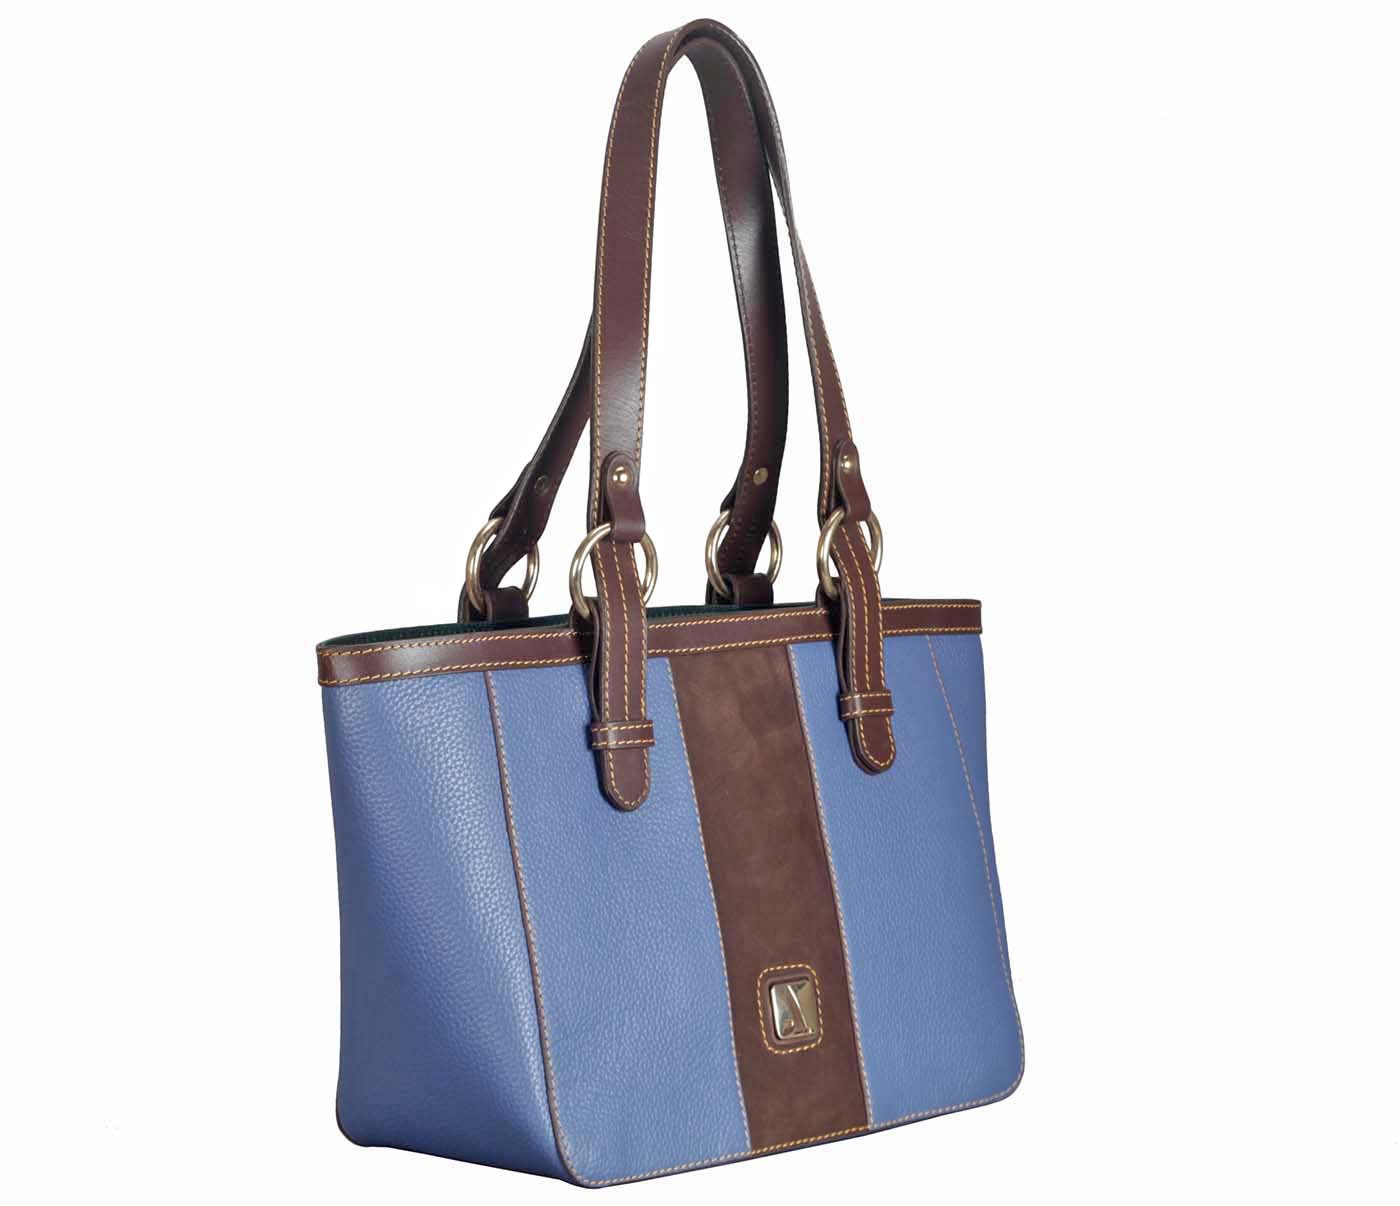 Handbag-Christa-Shoulder work bag in Genuine Leather - BLU/BRN